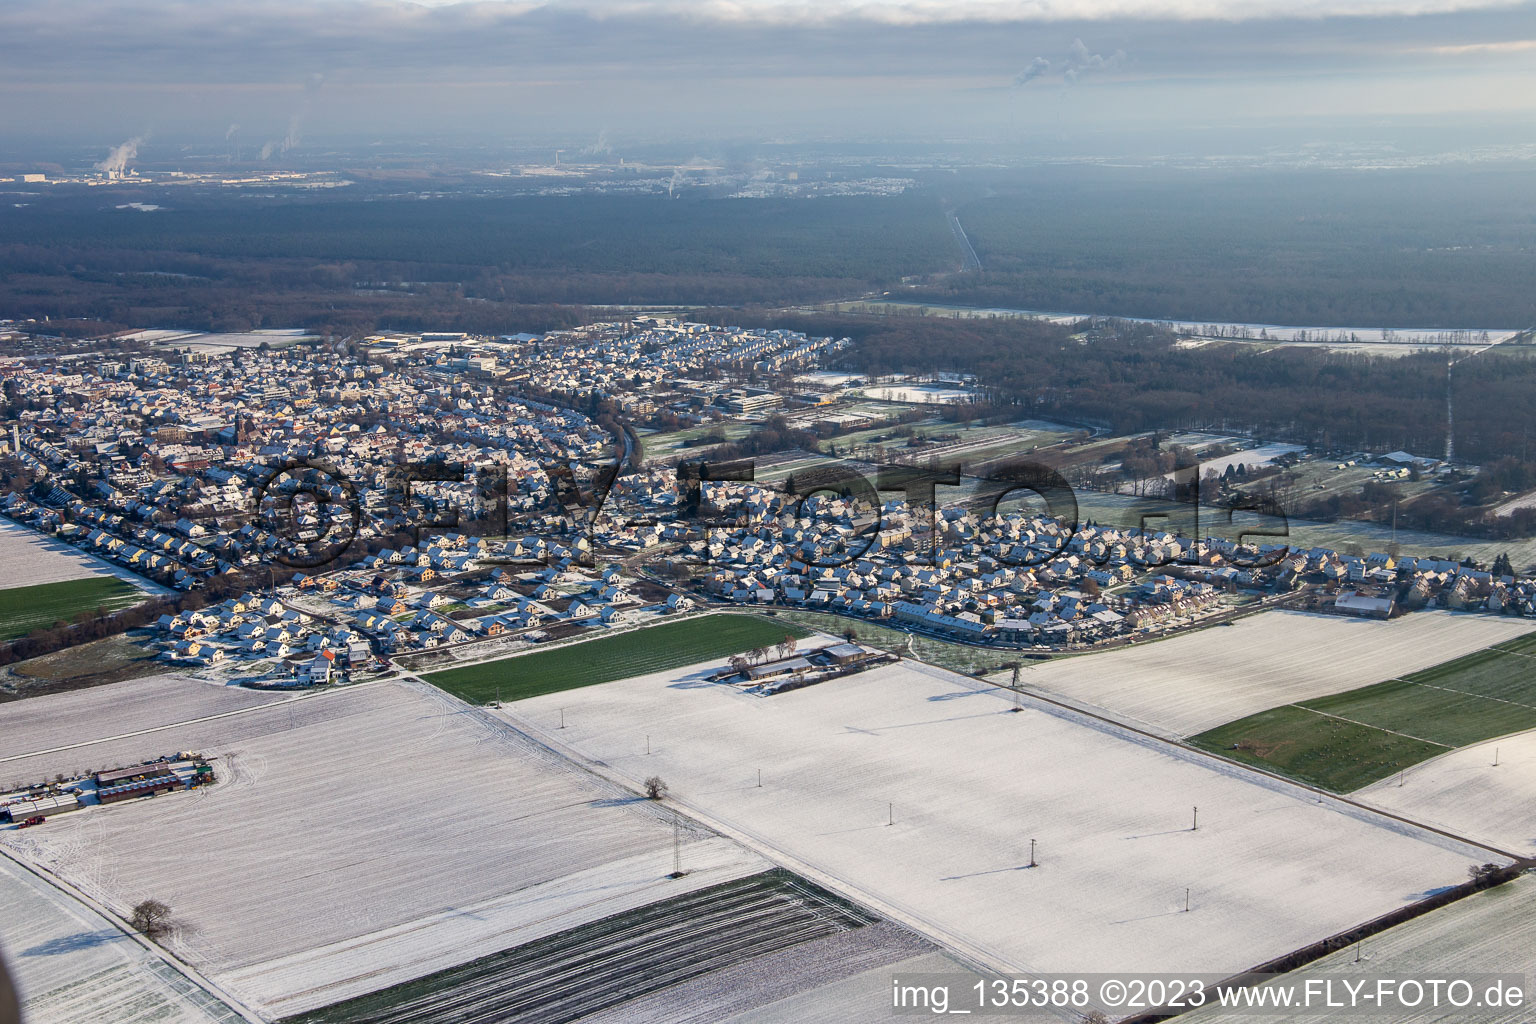 Vue aérienne de Nouvelle zone de développement K2 en hiver quand il y a de la neige à Kandel dans le département Rhénanie-Palatinat, Allemagne